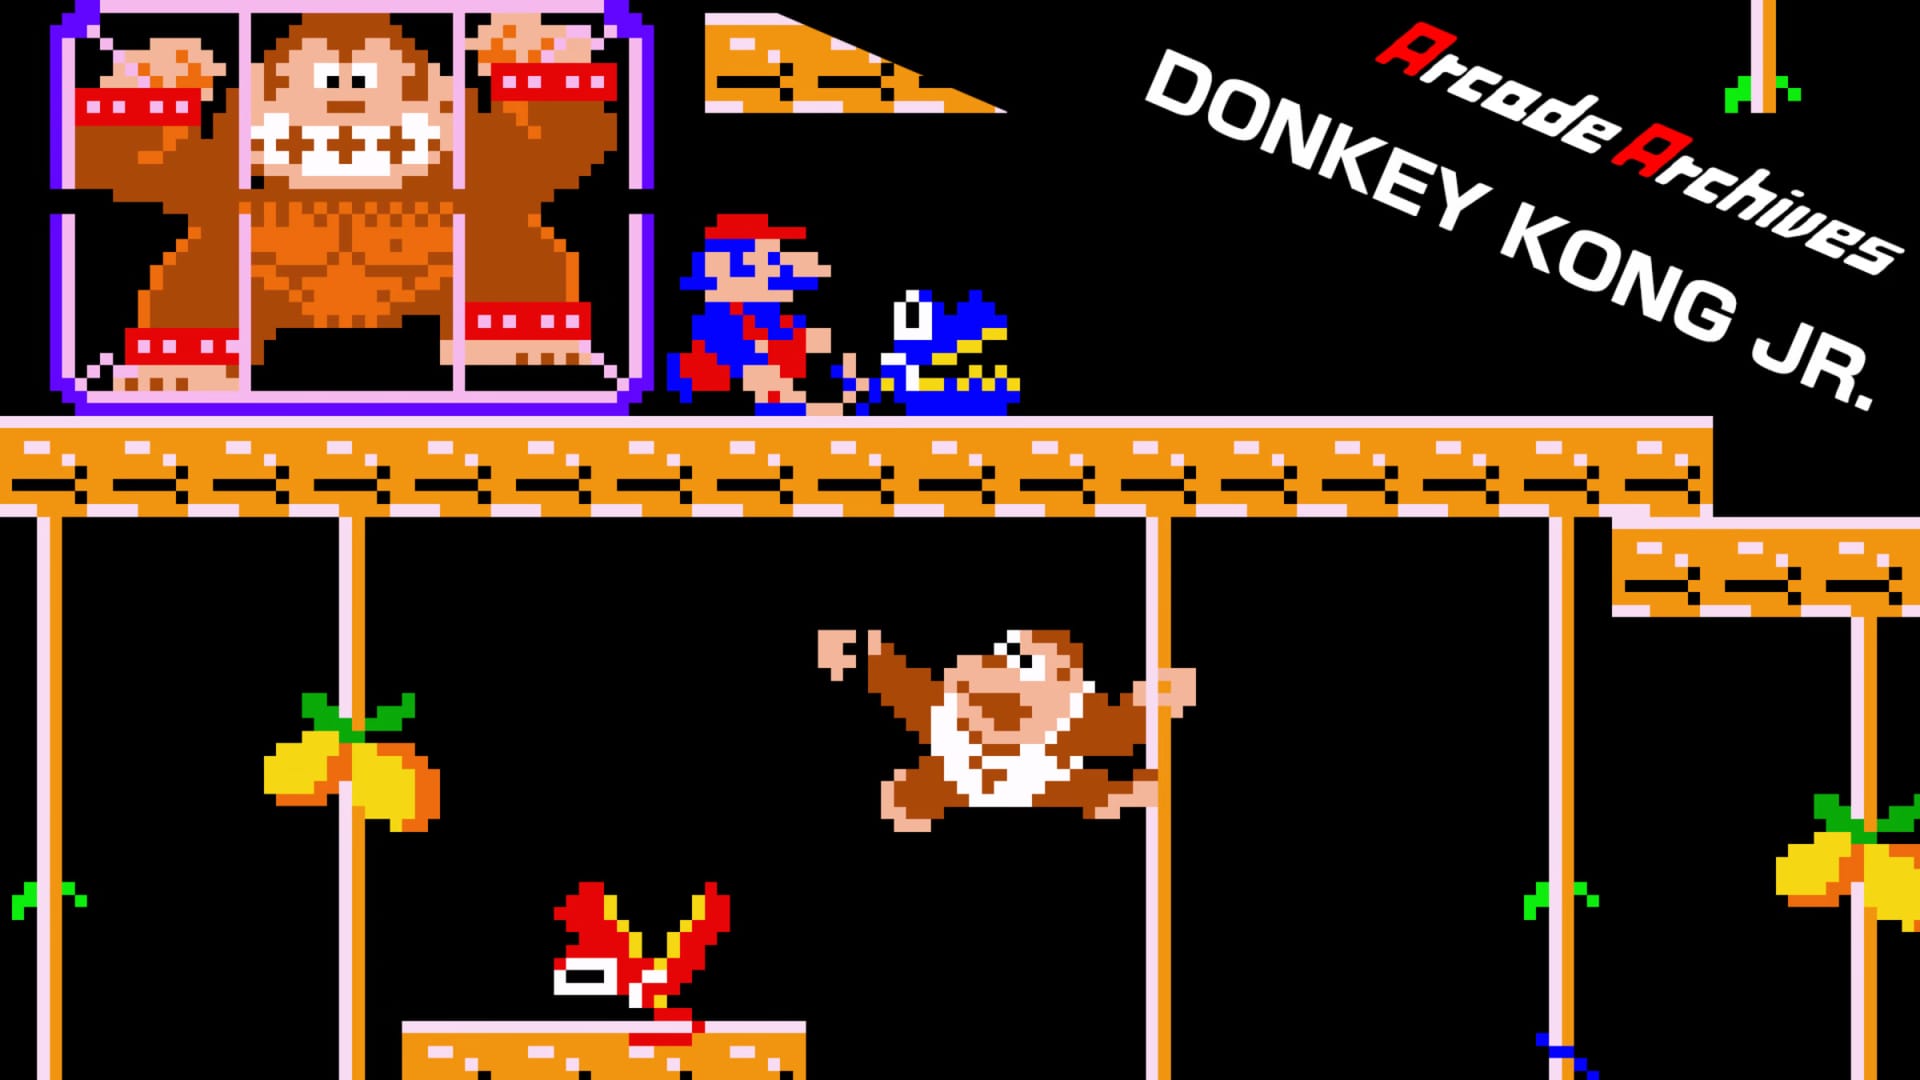 Mario in Donkey Kong JR